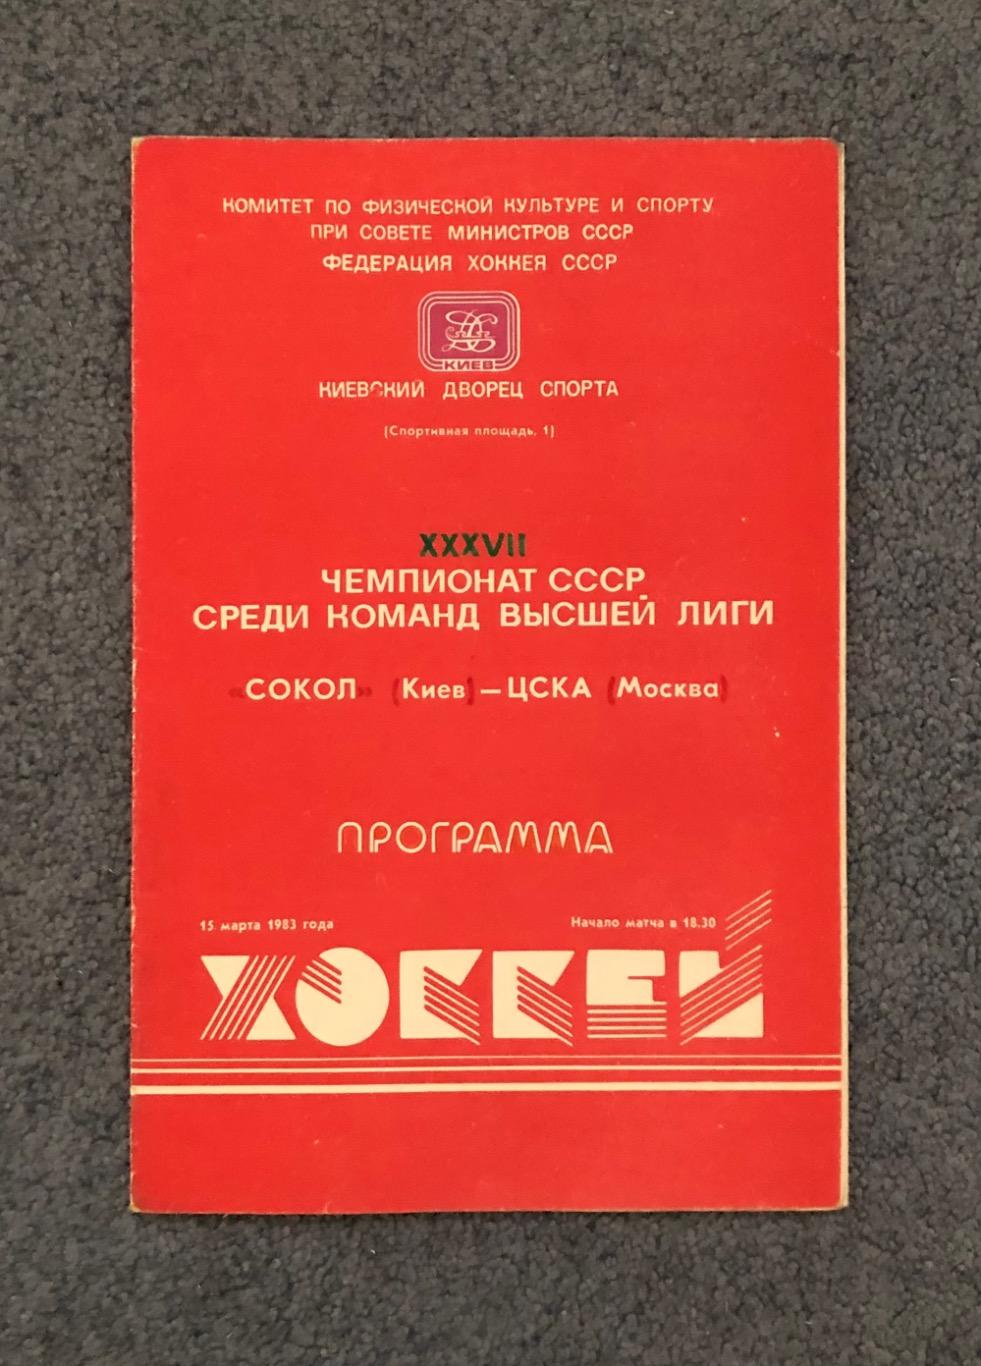 Сокол Киев - ЦСКА, 15.03.1983